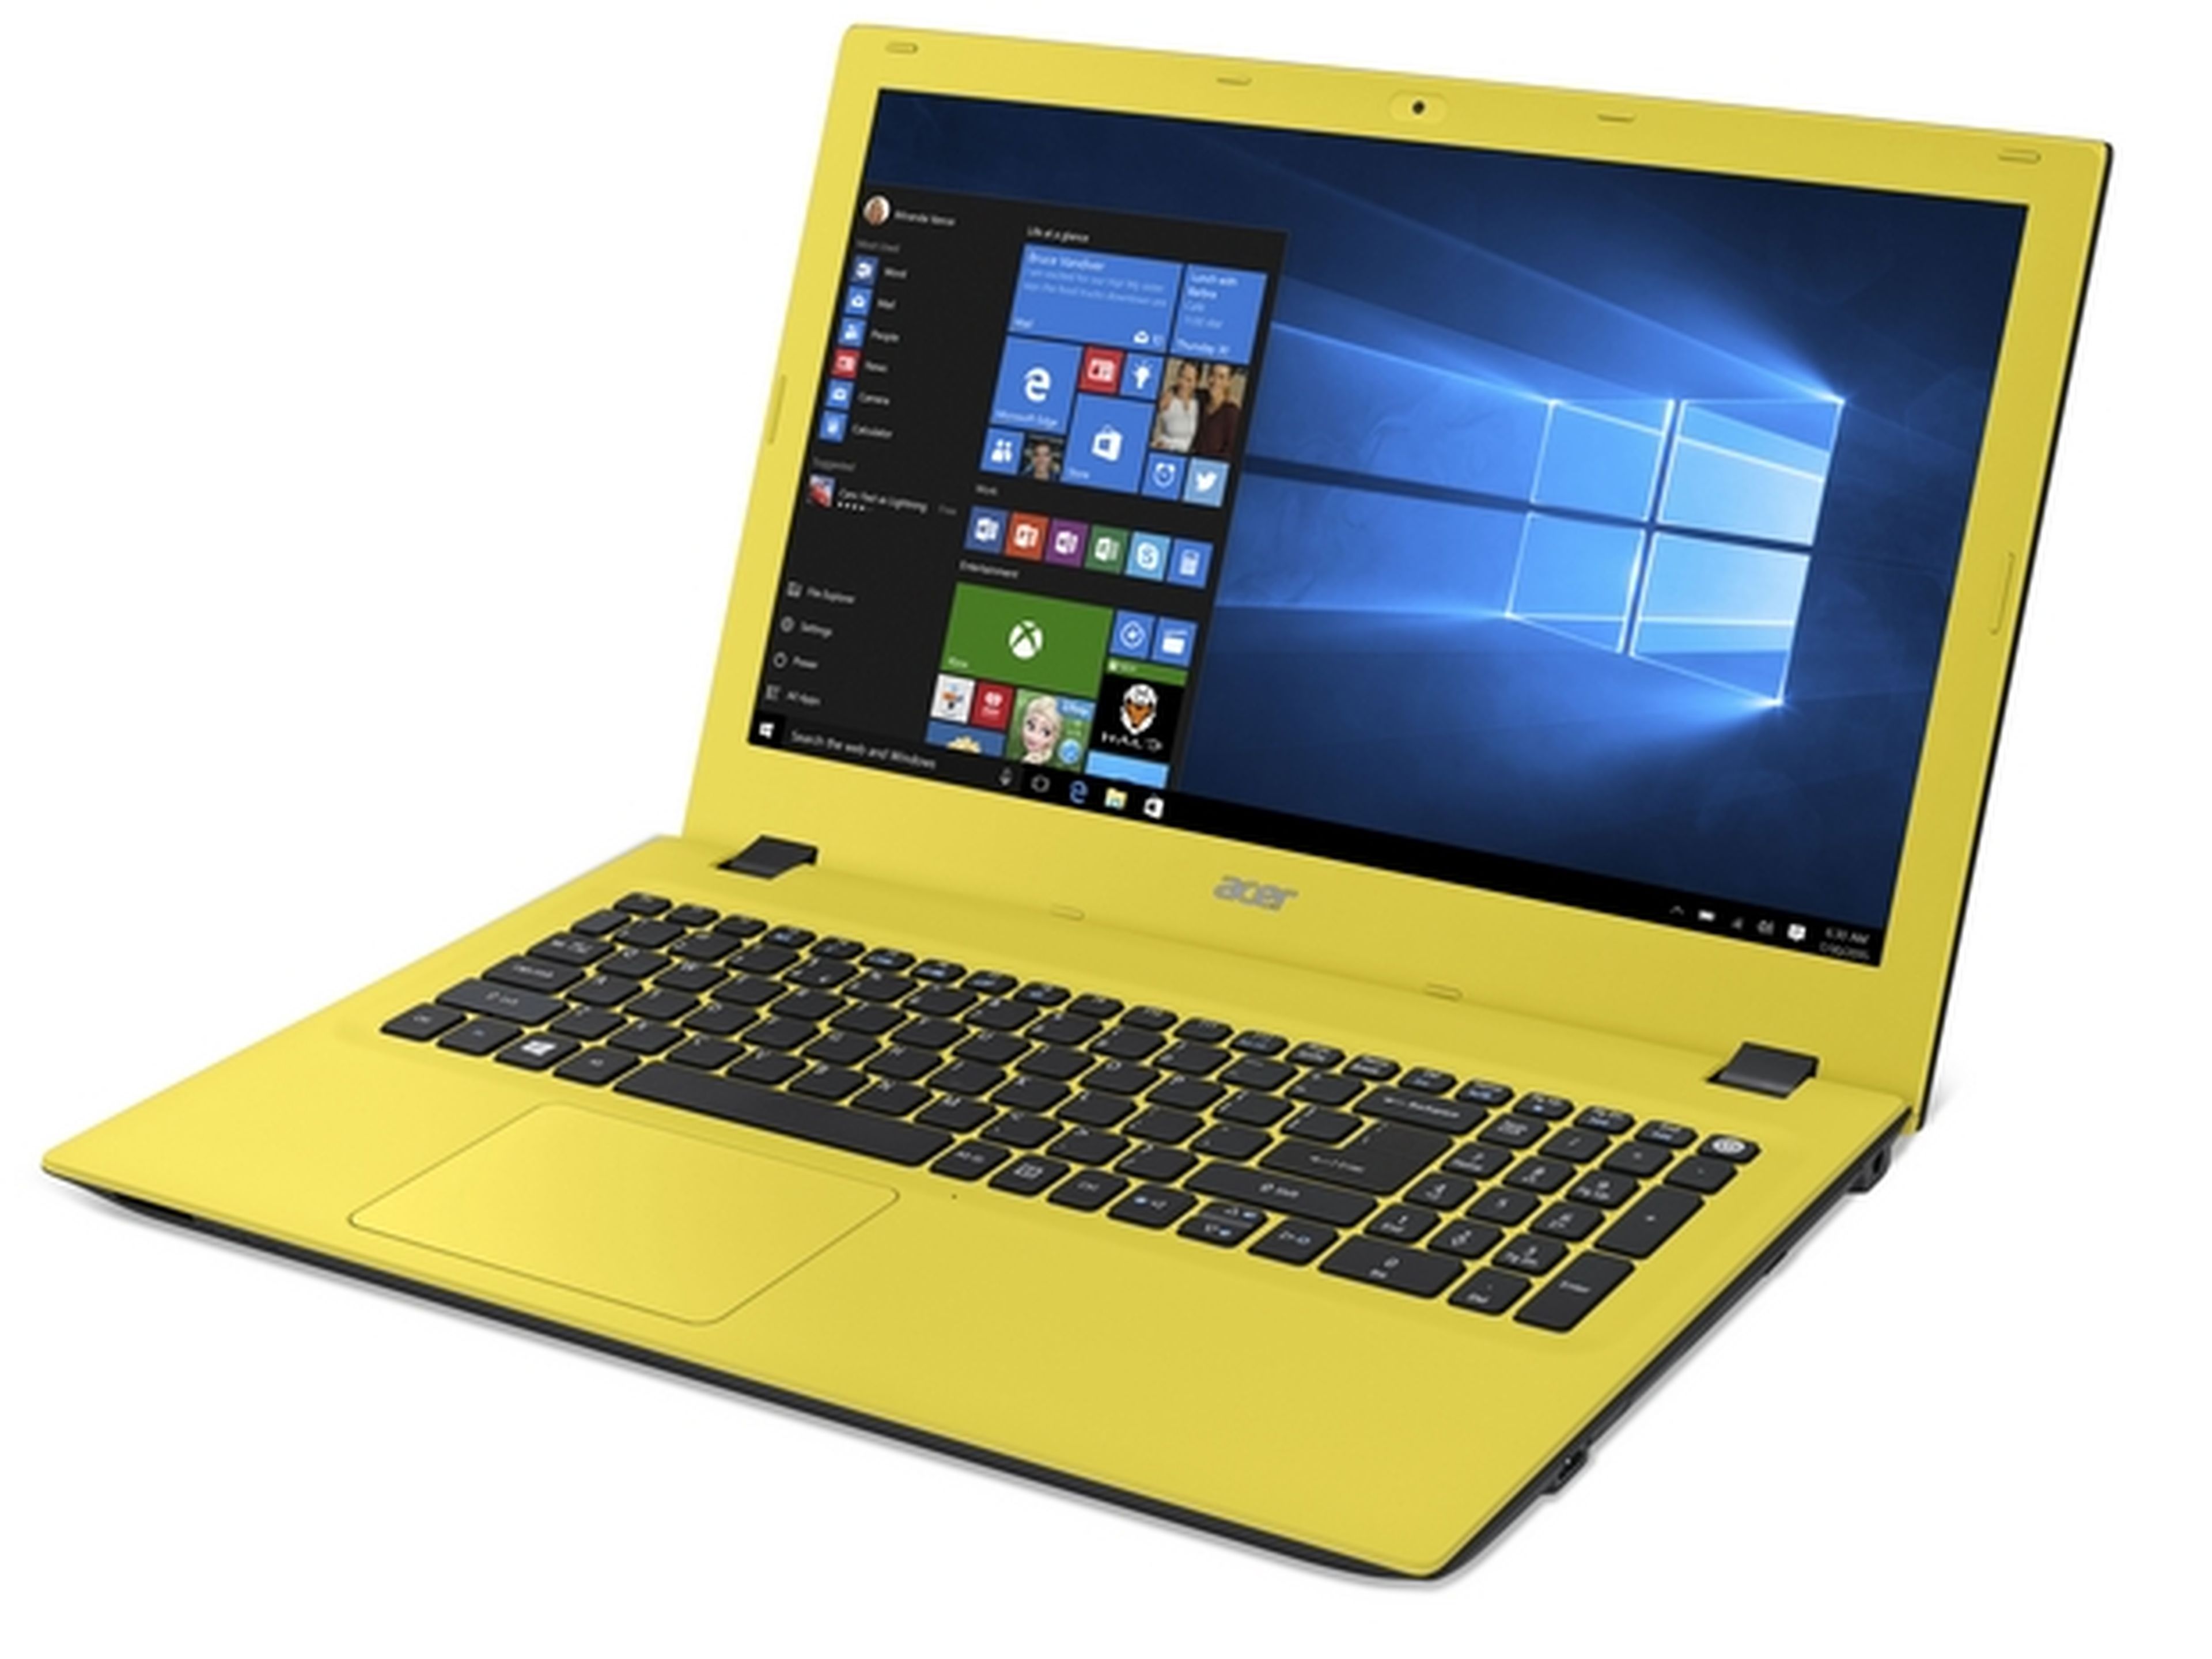 ¿Cómo debe ser el portátil perfecto? Diseño y funcionalidad. Así es el notebook Acer Aspire E15